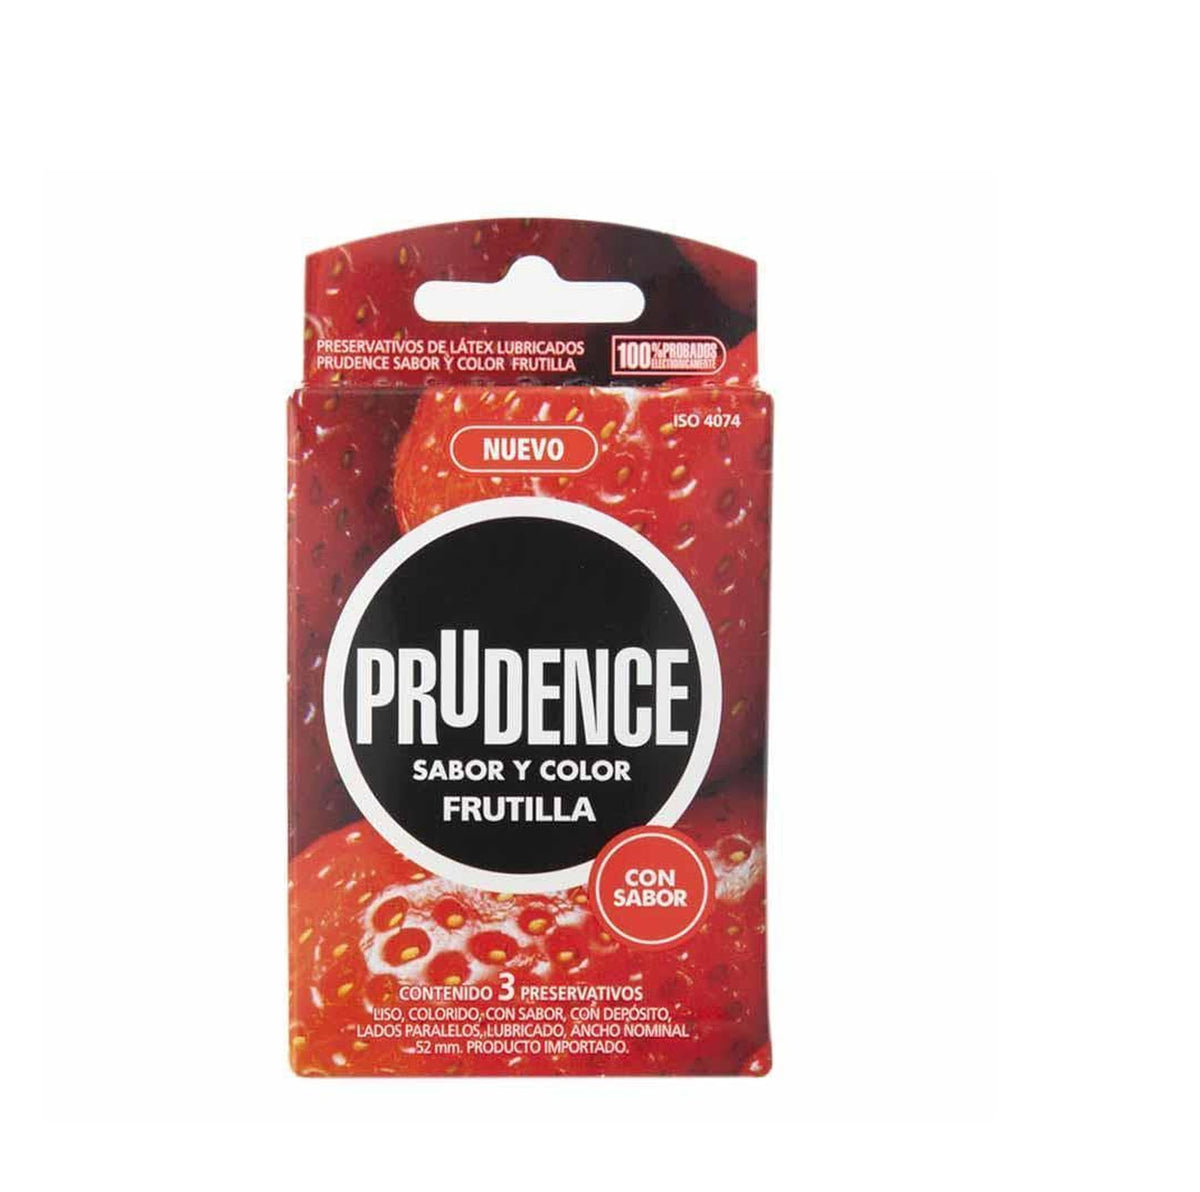 Prudence Preservativos Frutilla